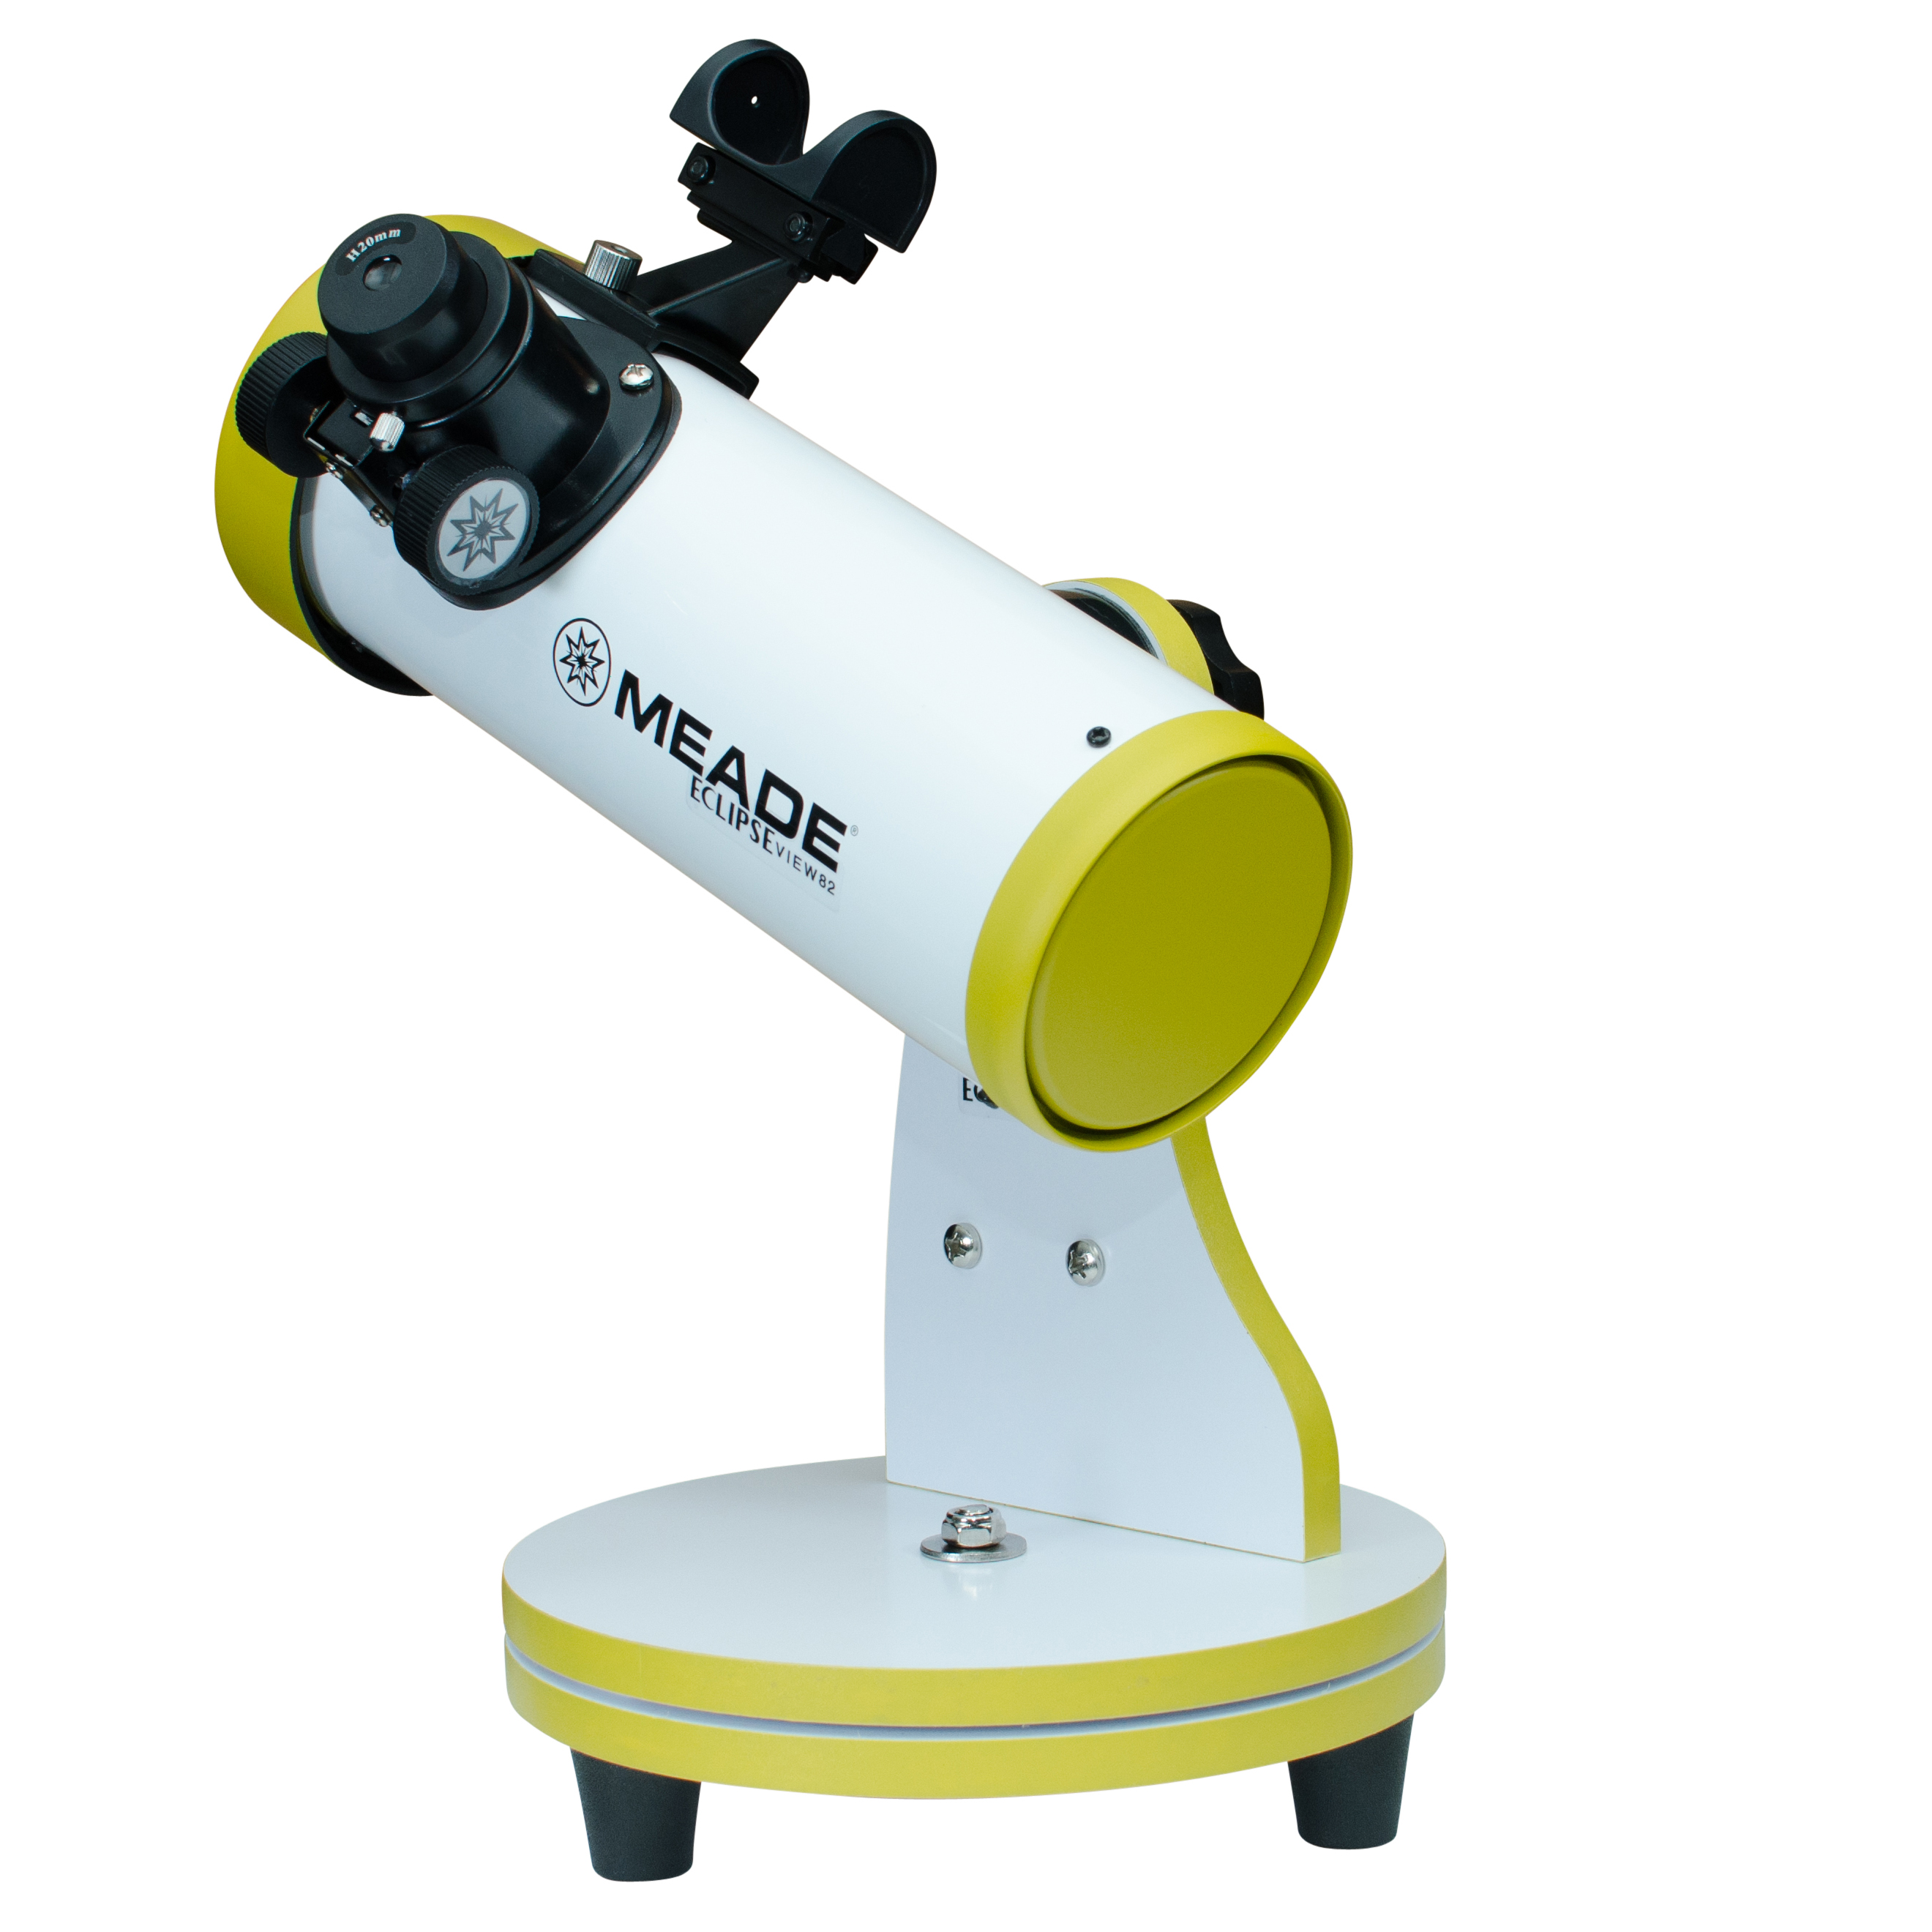 Kính thiên văn Meade 82 dòng phản xạ - Hàng chính hãng, bảo hành 2 năm, quan sát ngày đêm, trang bị phim lọc và kính tìm để quan sát mặt trời